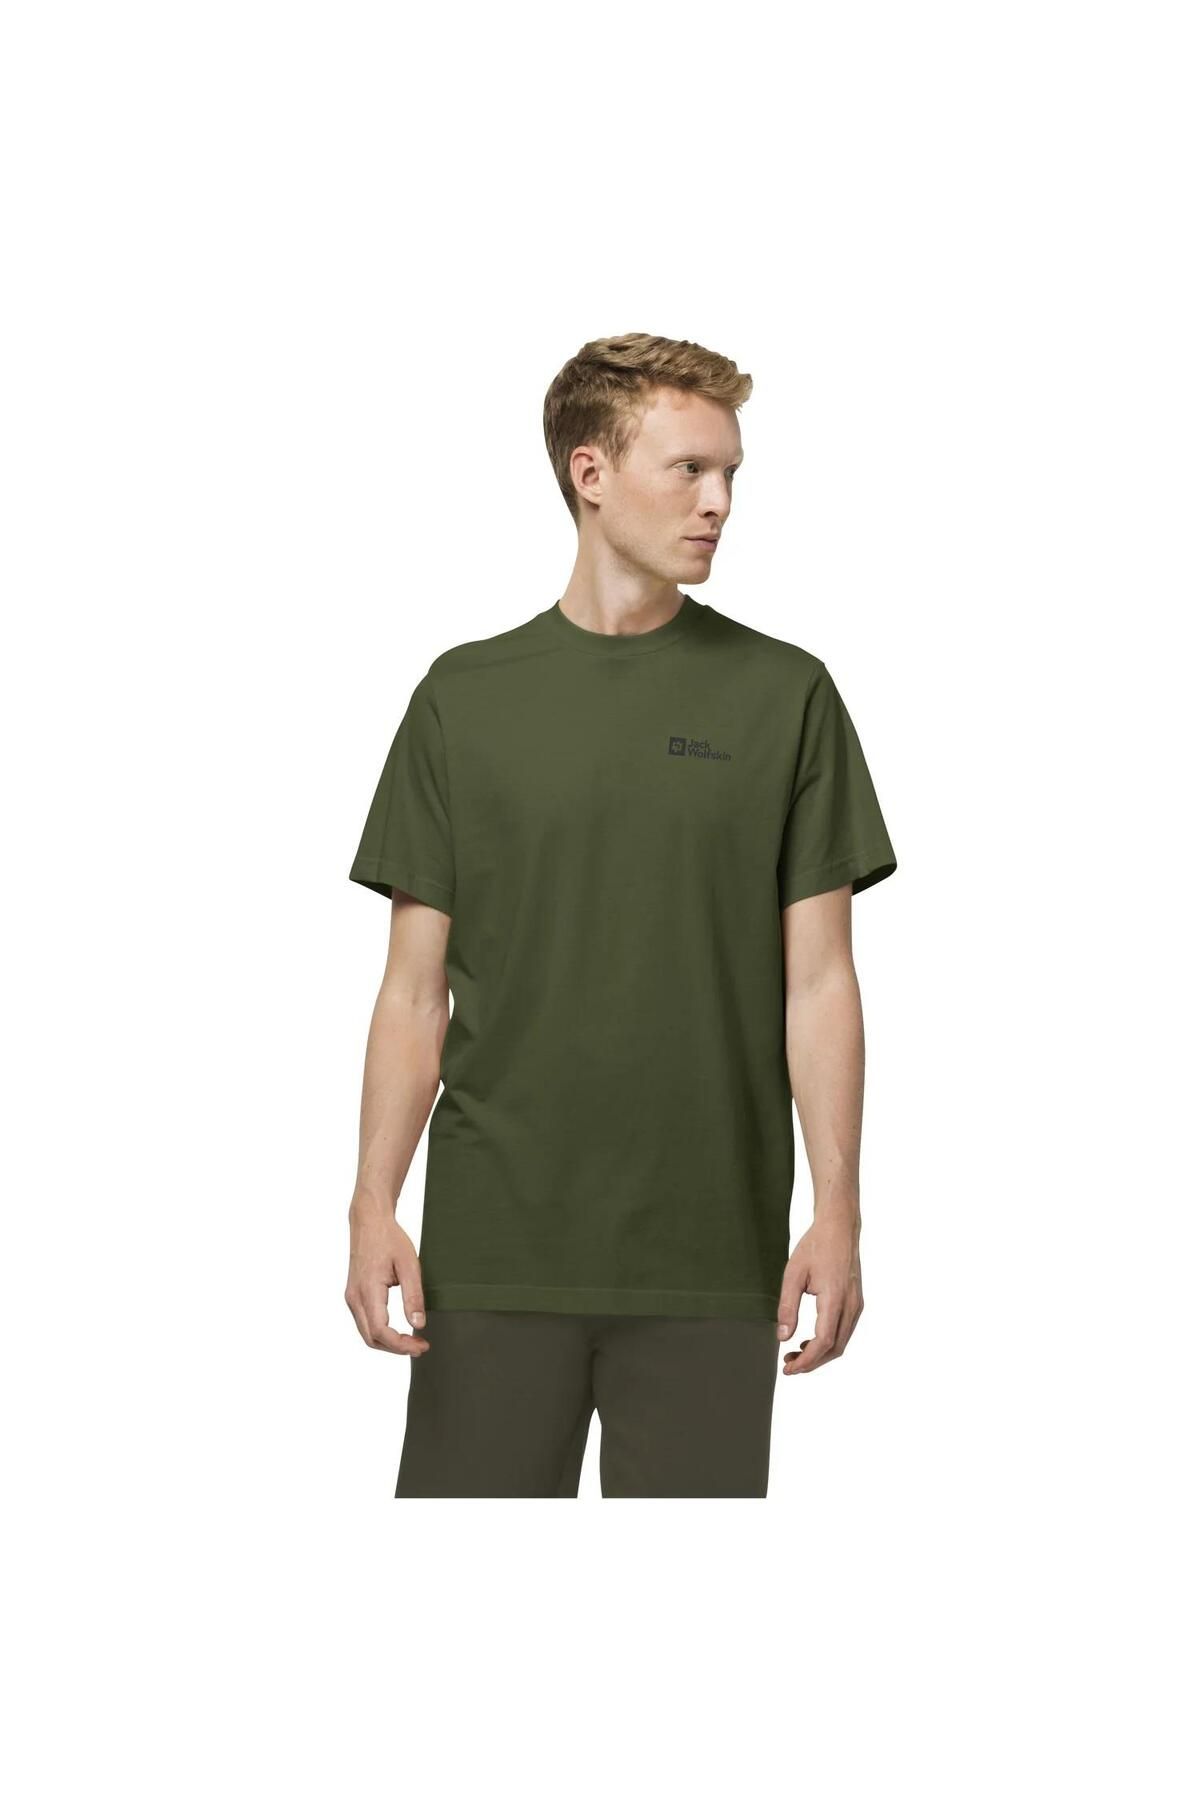 Jack Wolfskin Essential Erkek T-shirt-1808382grw